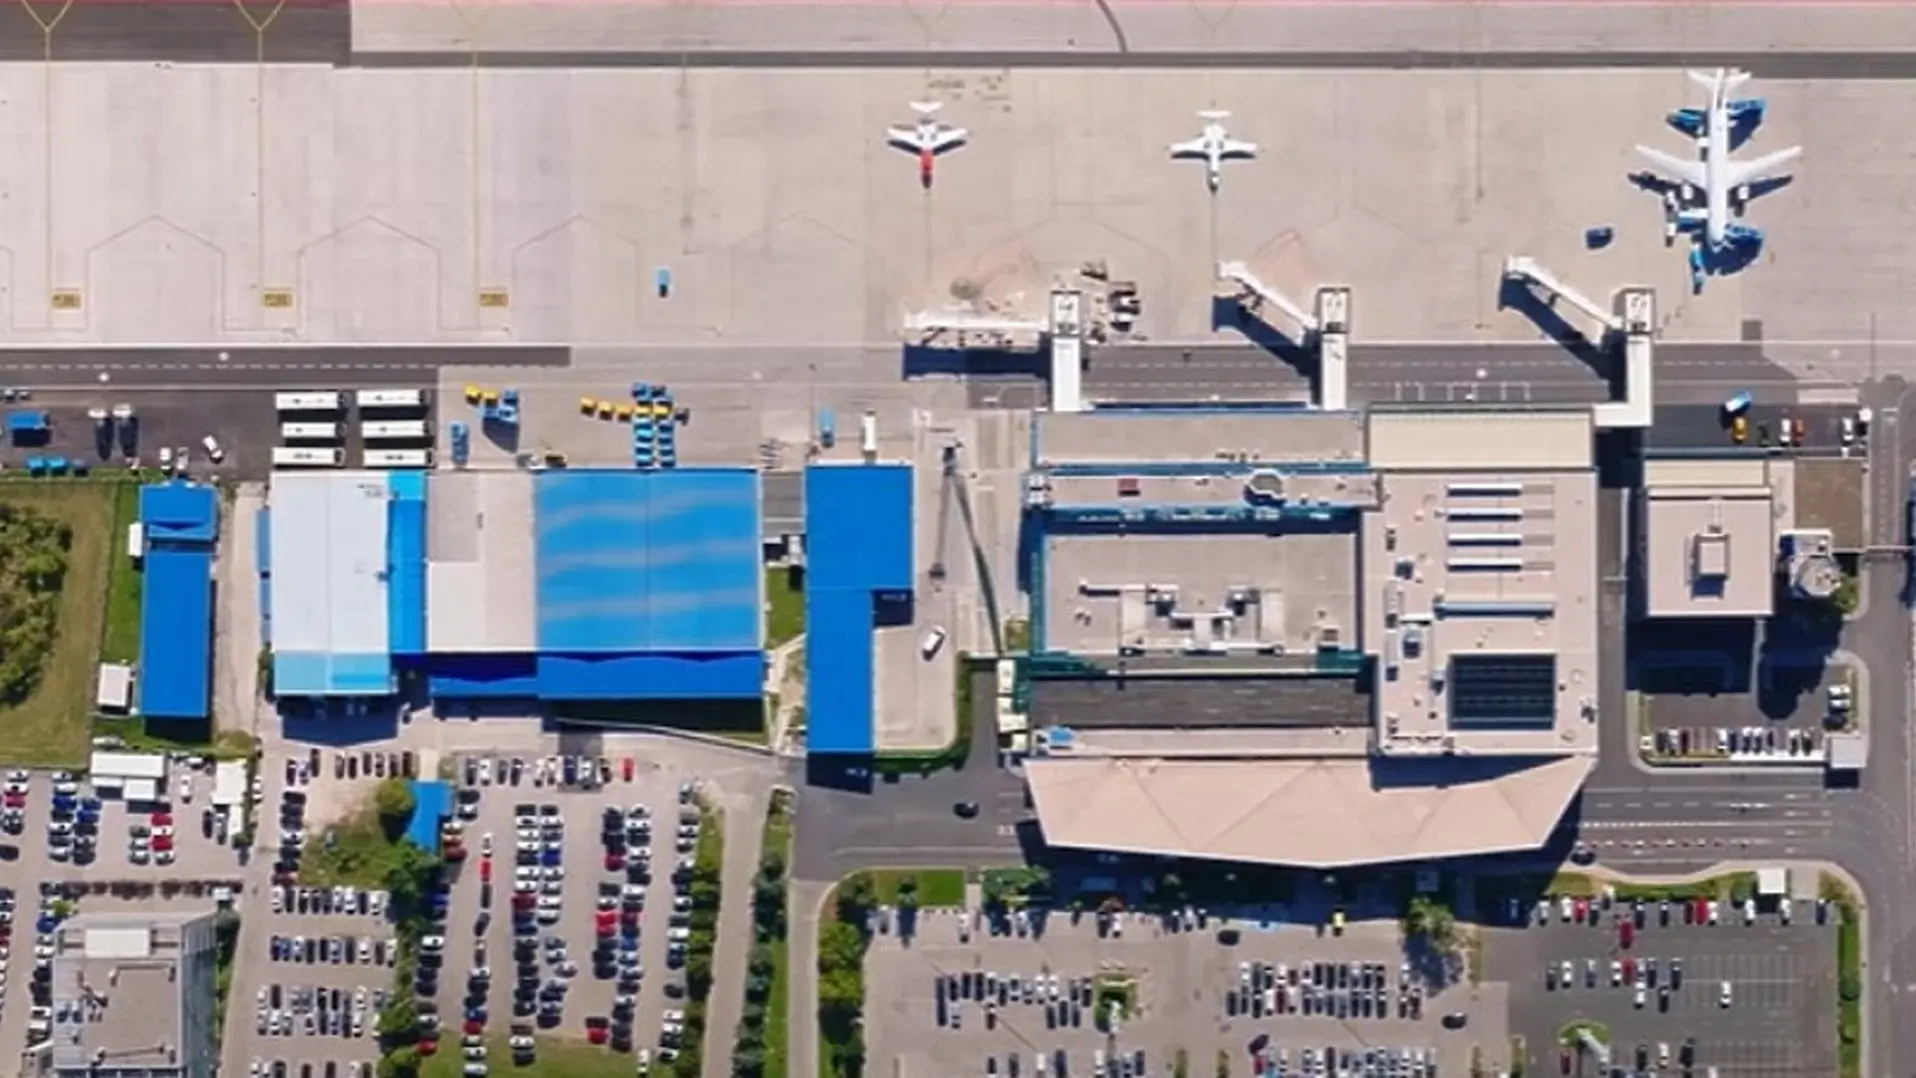 aerodrom sarajevo screenshot 12-652d36351c08e.webp